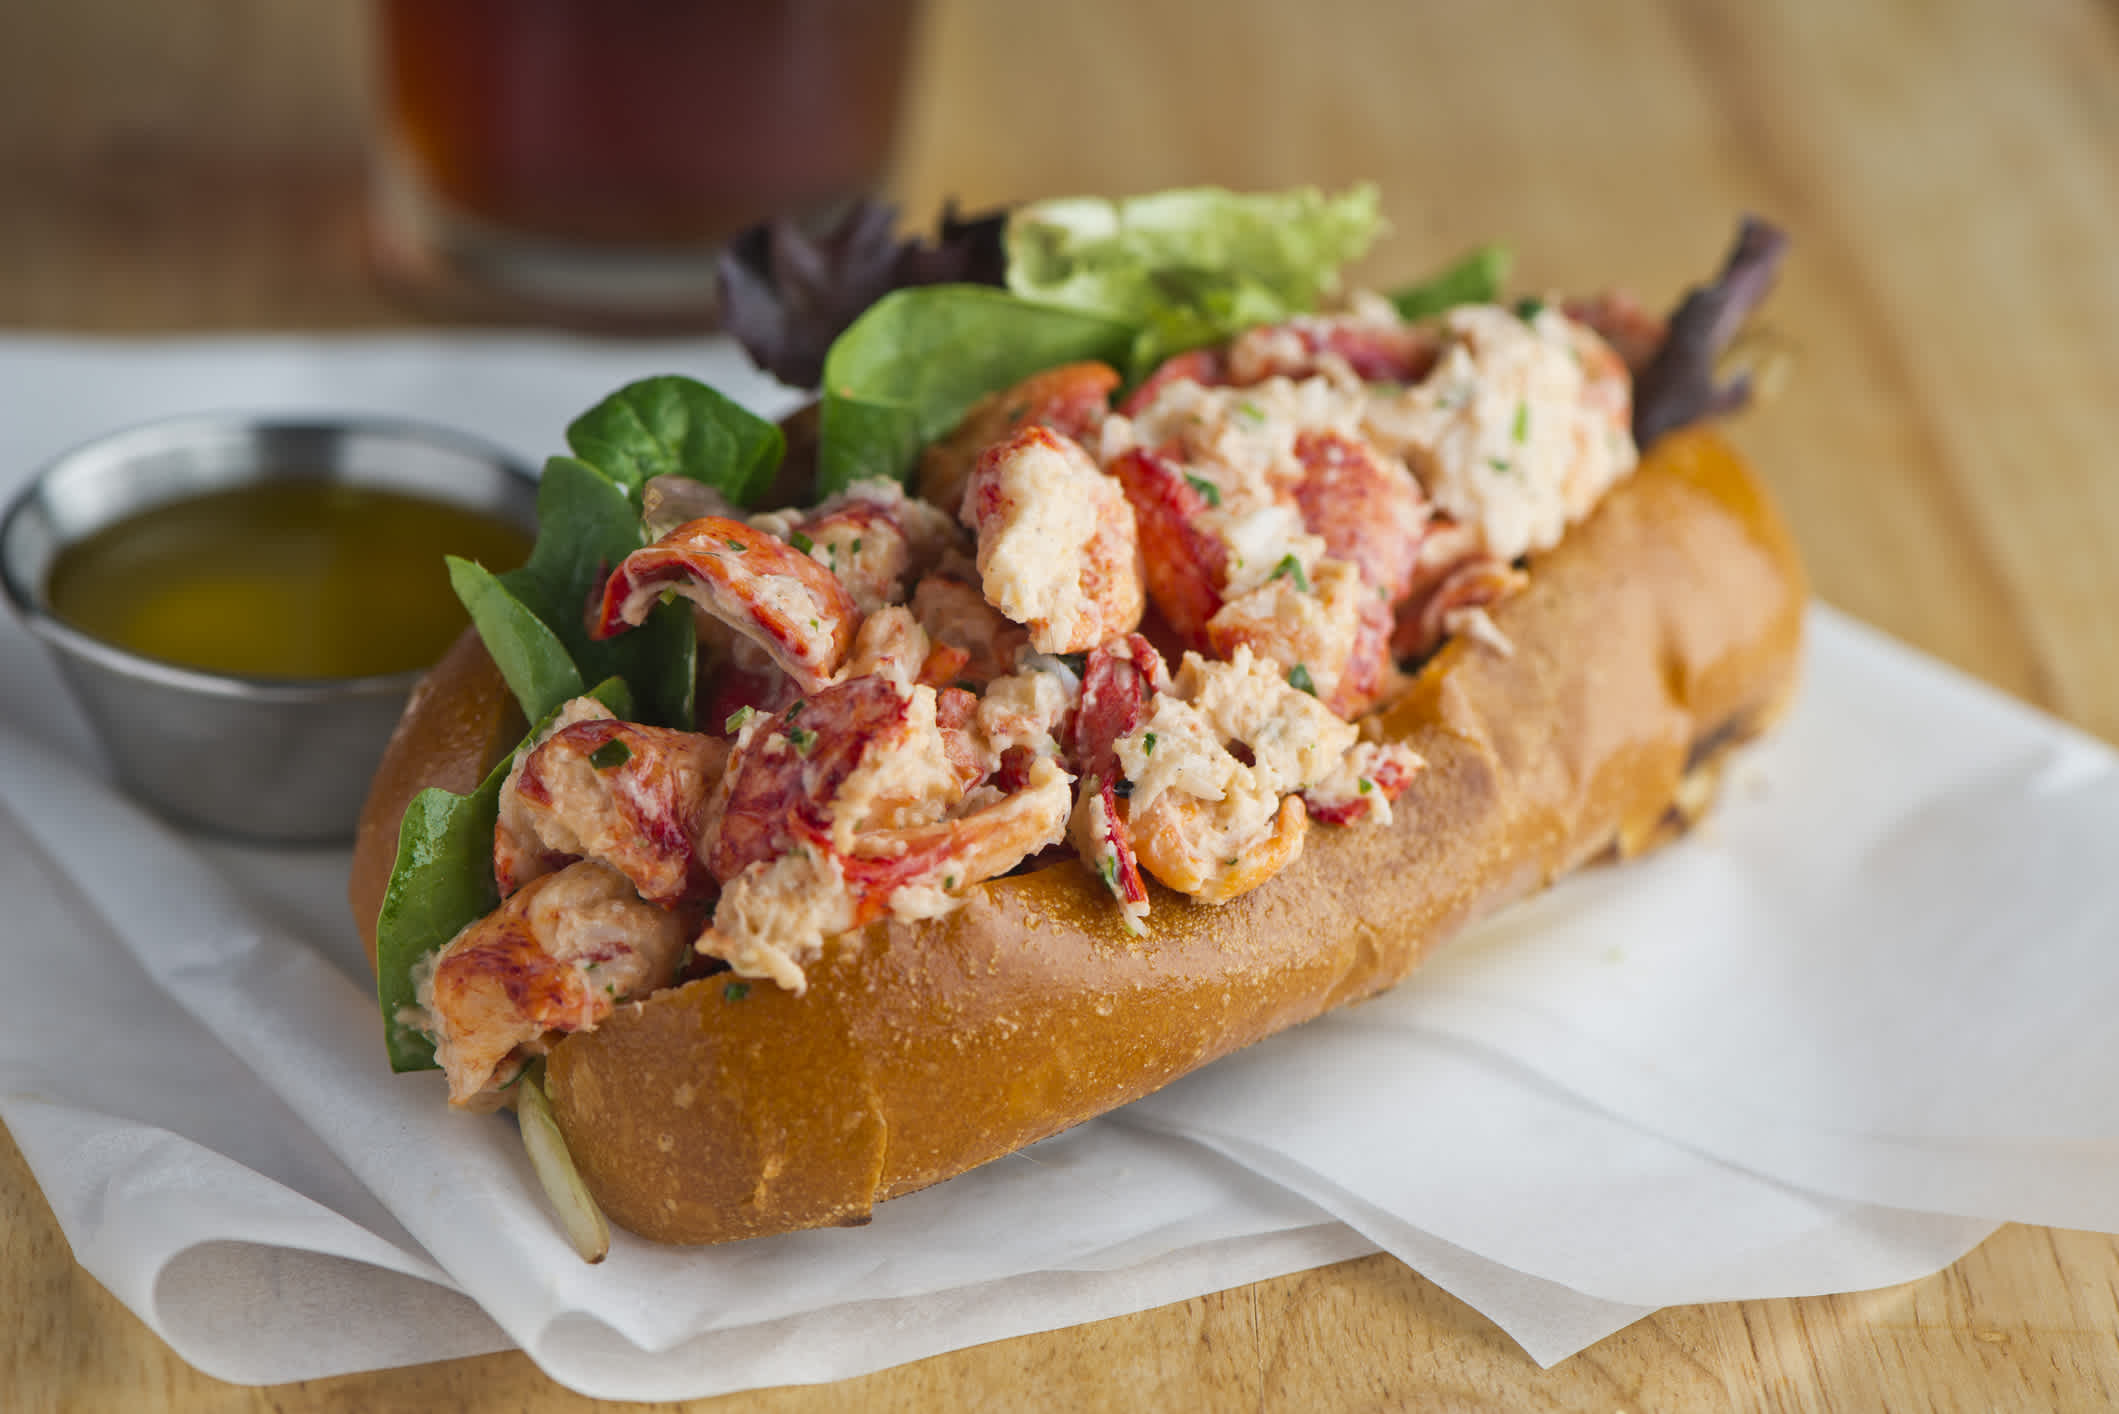 Lobster roll sur pain à hot-dog grillé et salade, repas typique des États-Unis.